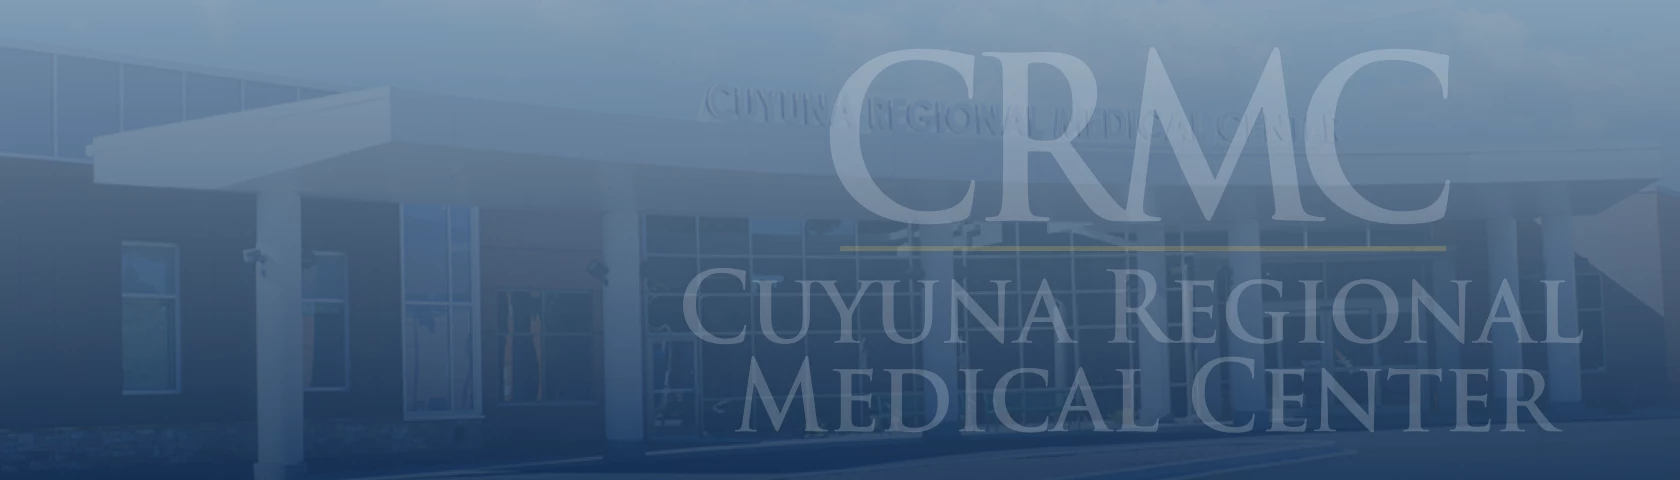 CRMC - Cuyuna Regional Medical Center